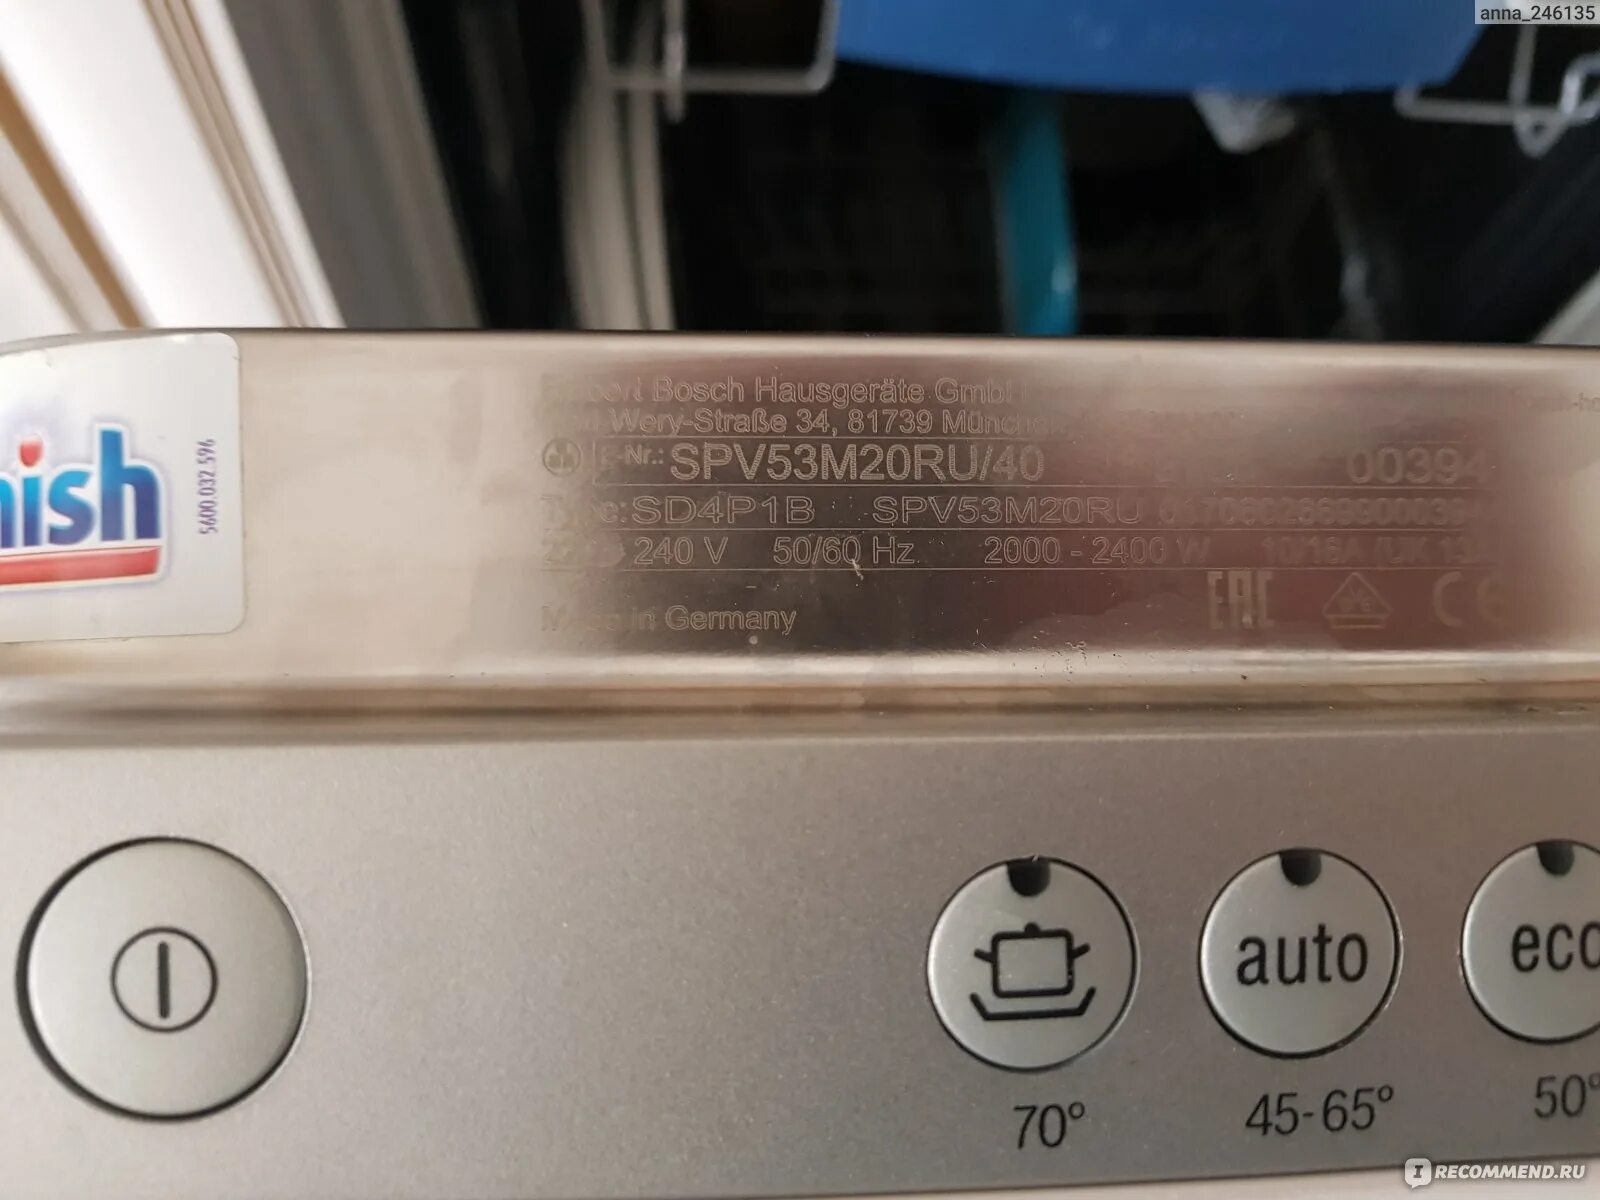 Посудомойка бош мигает. Посудомоечная машина Bosch 440mv. Посудомоечная машина бош SPV 53m 20ru встраиваемая. Посудомоечная машина Bosch SPV 69x00. Бош посудомоечная машина spv53m00ru 14.